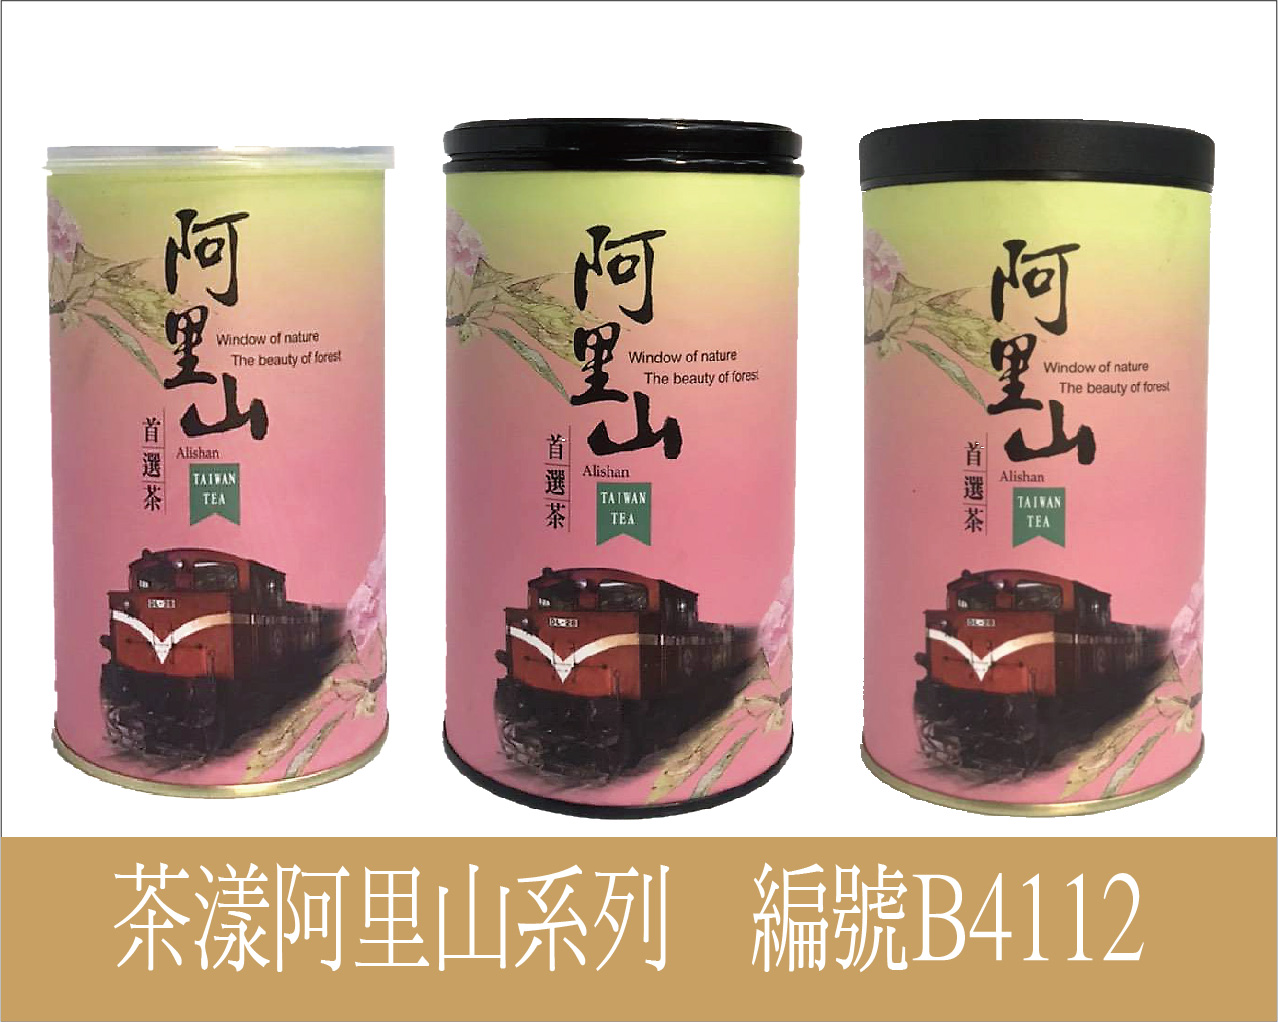 B-8112茶漾-阿里山茶-300g紙罐